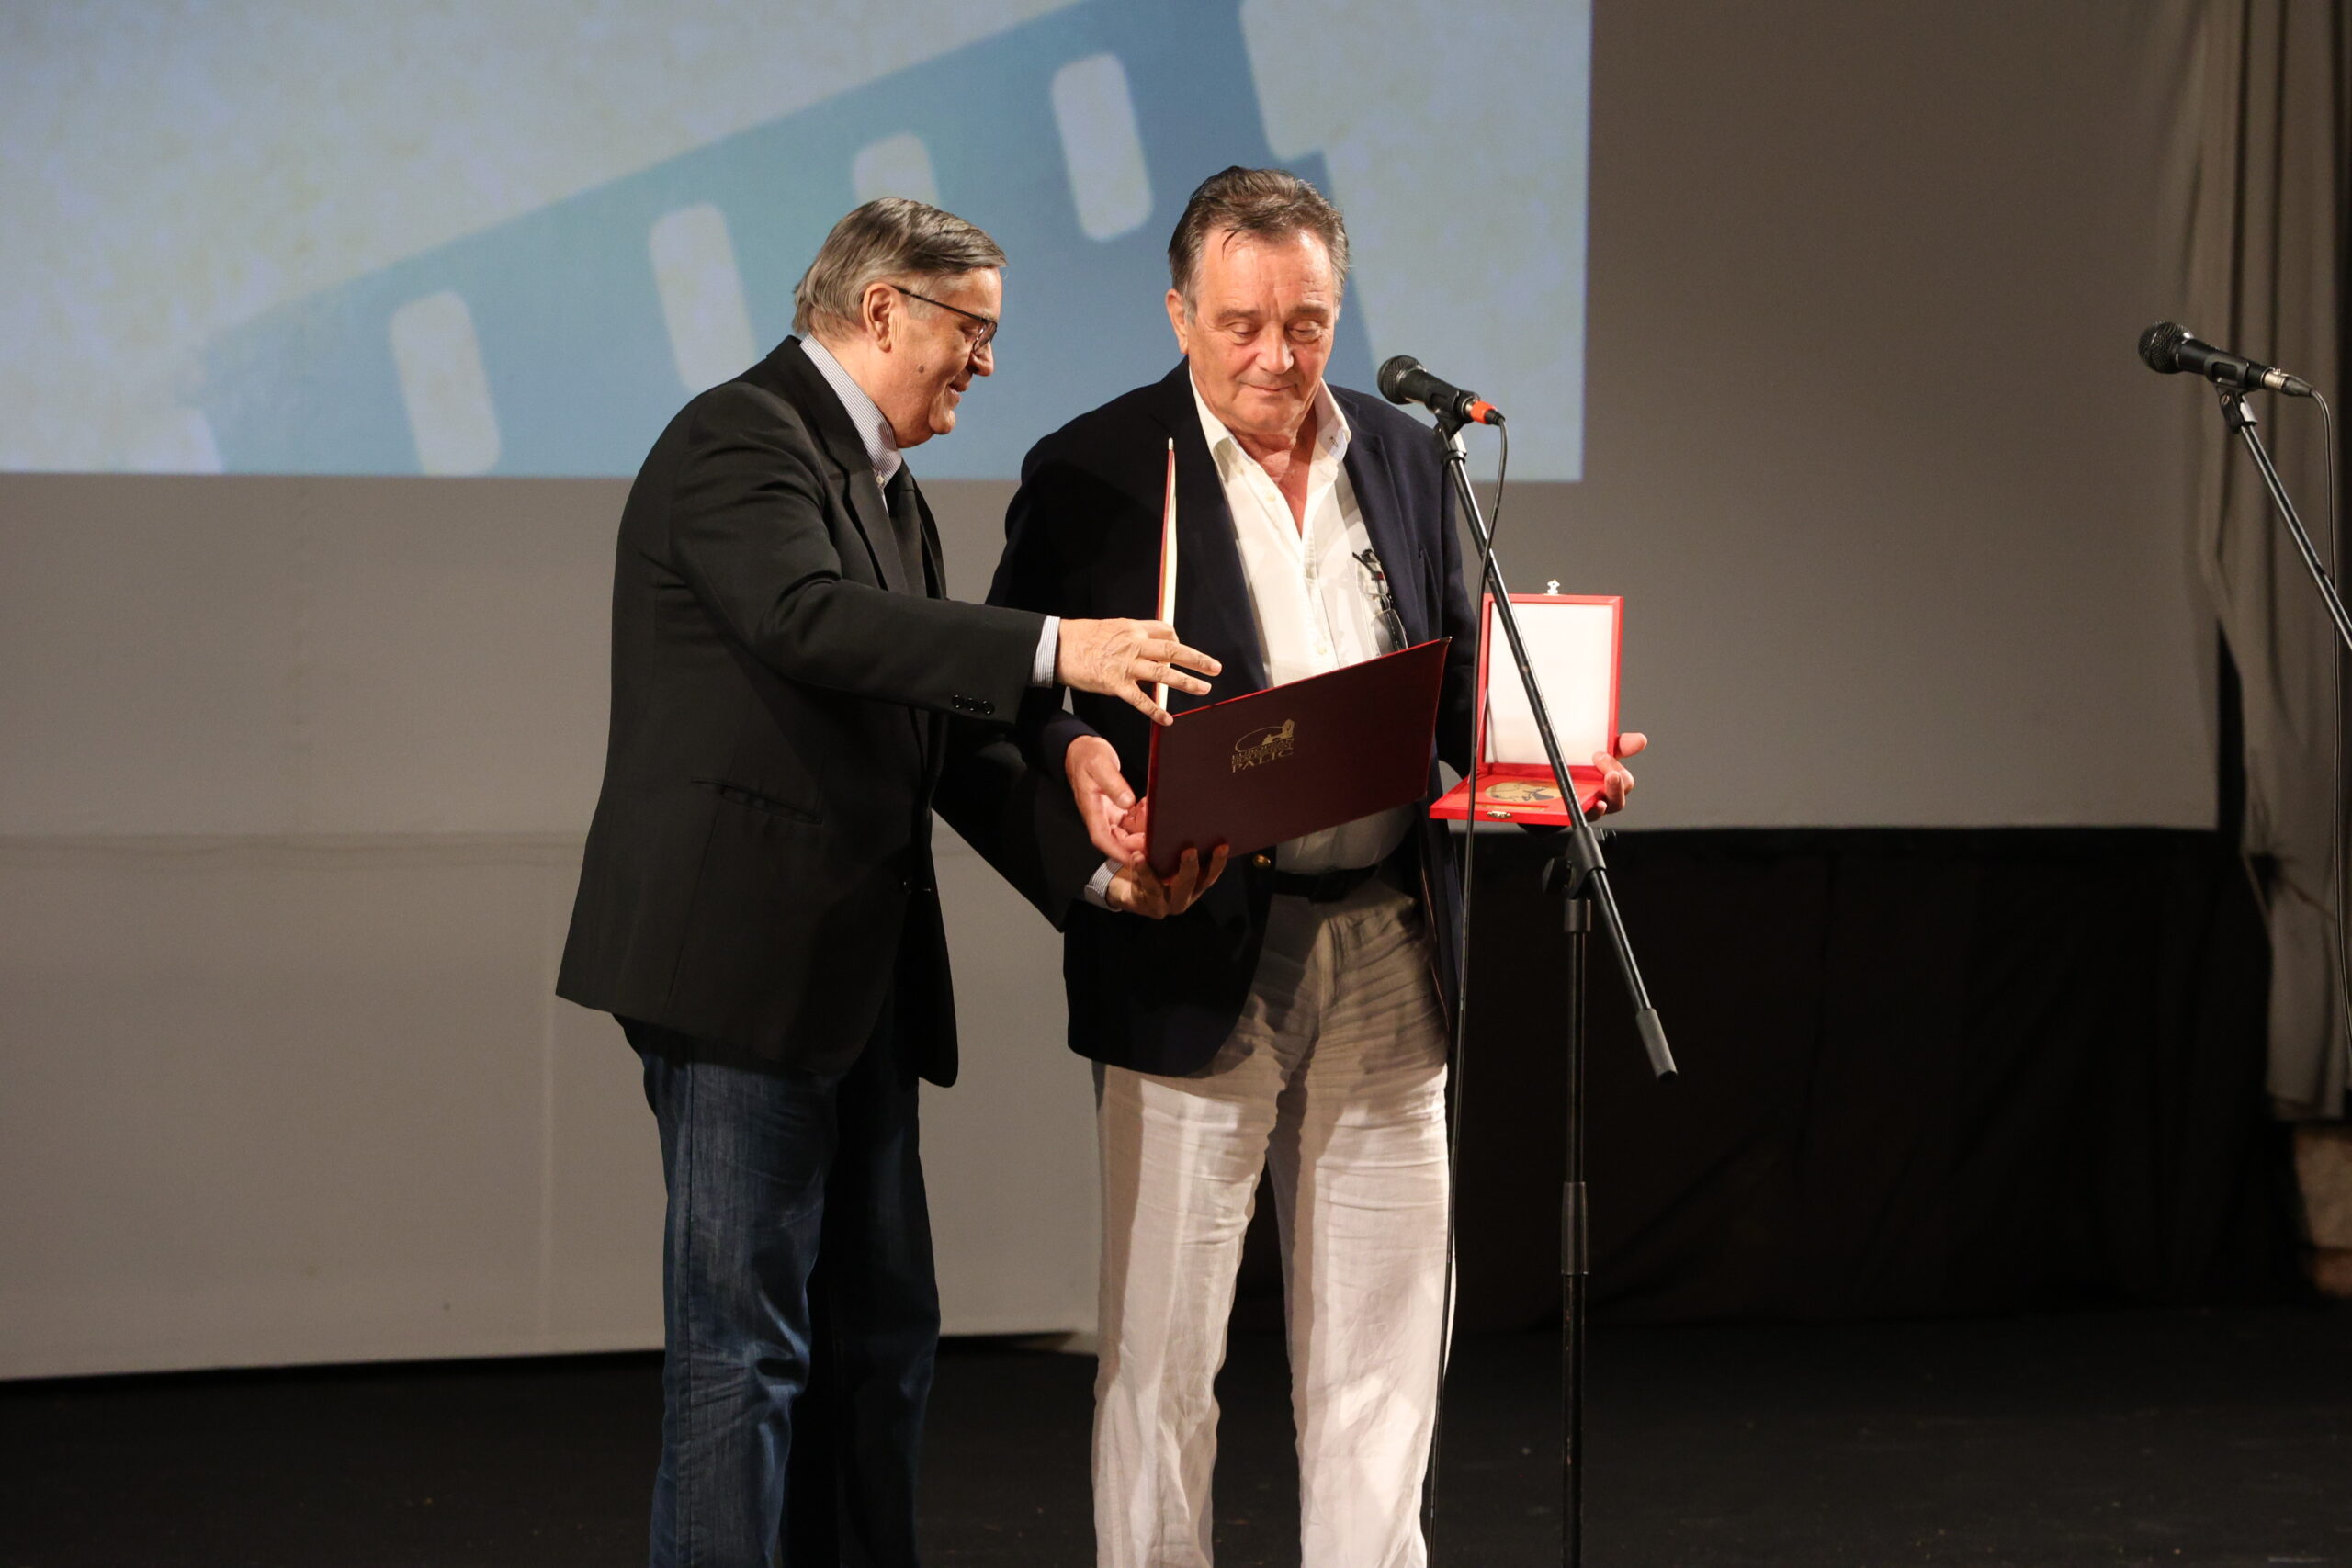 Glumcu Igoru Galu uručena regionalna “Lifka” nagrada